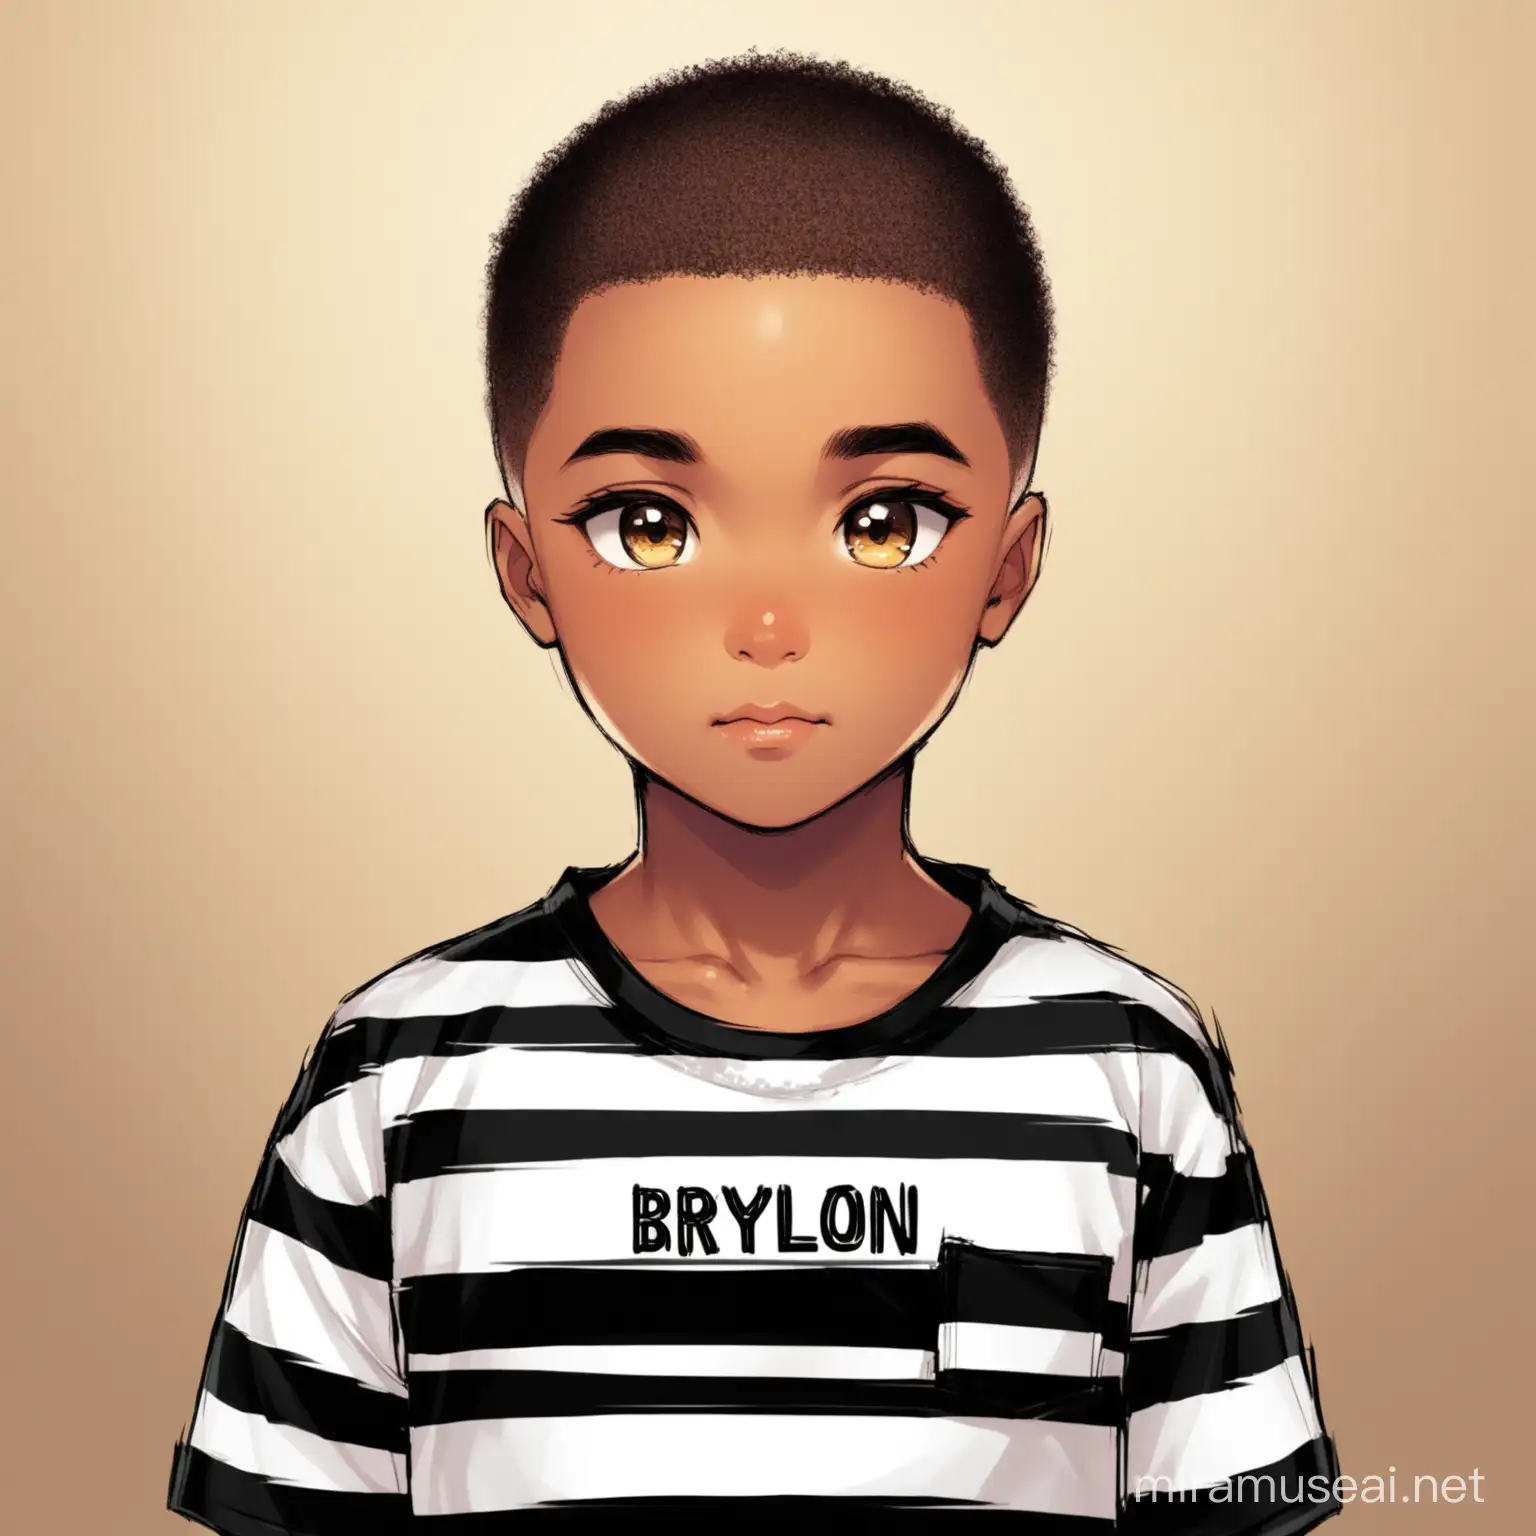 A prisoner named Braylon